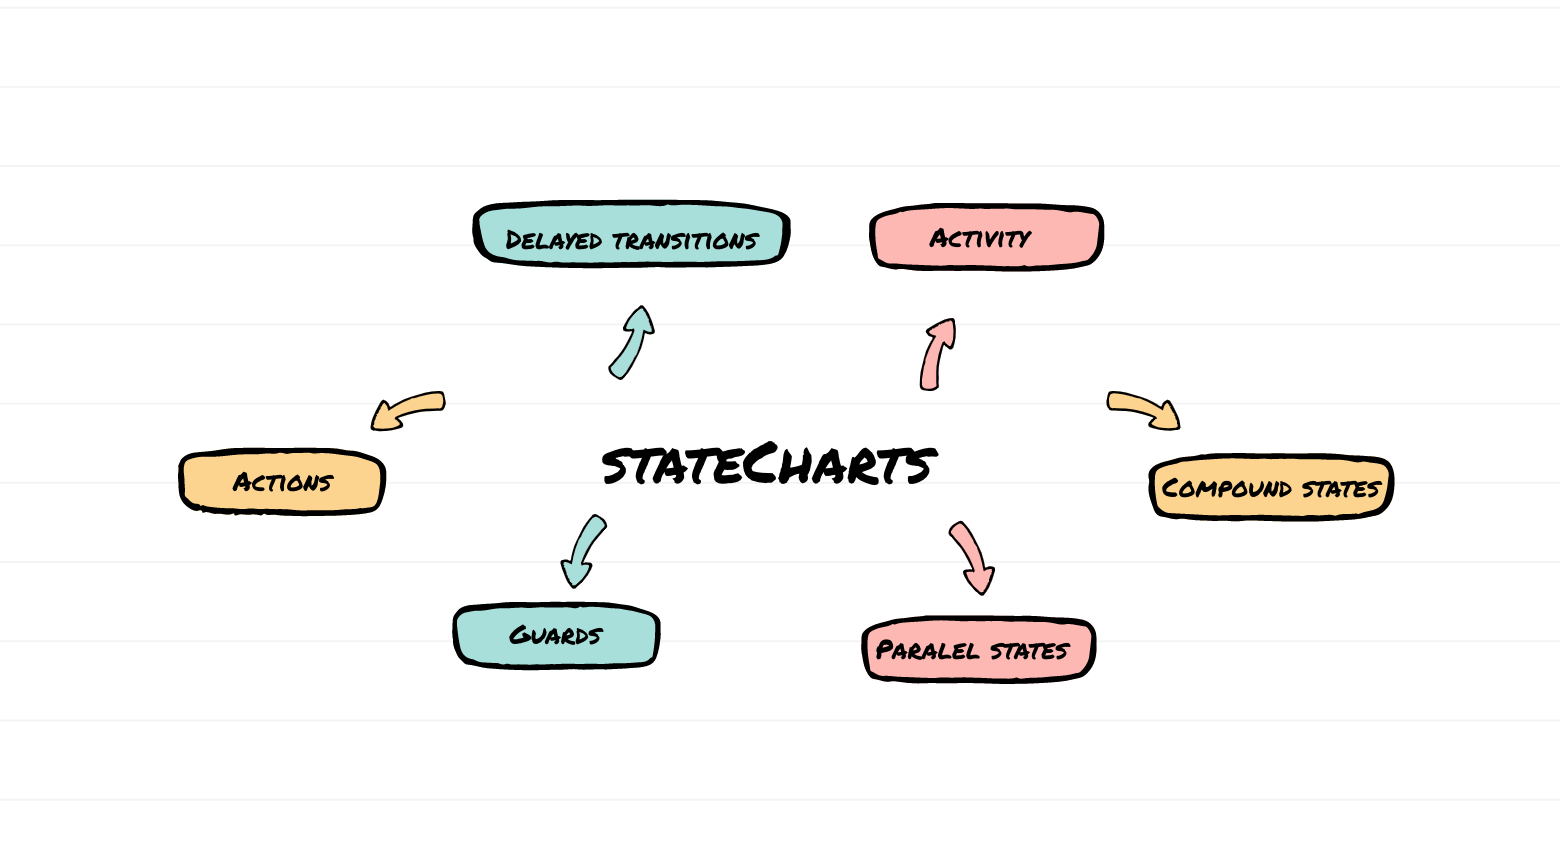 imagem mostrando alguns dos conceitos que state charts contém, como activity, actions, paralel states entre outros...